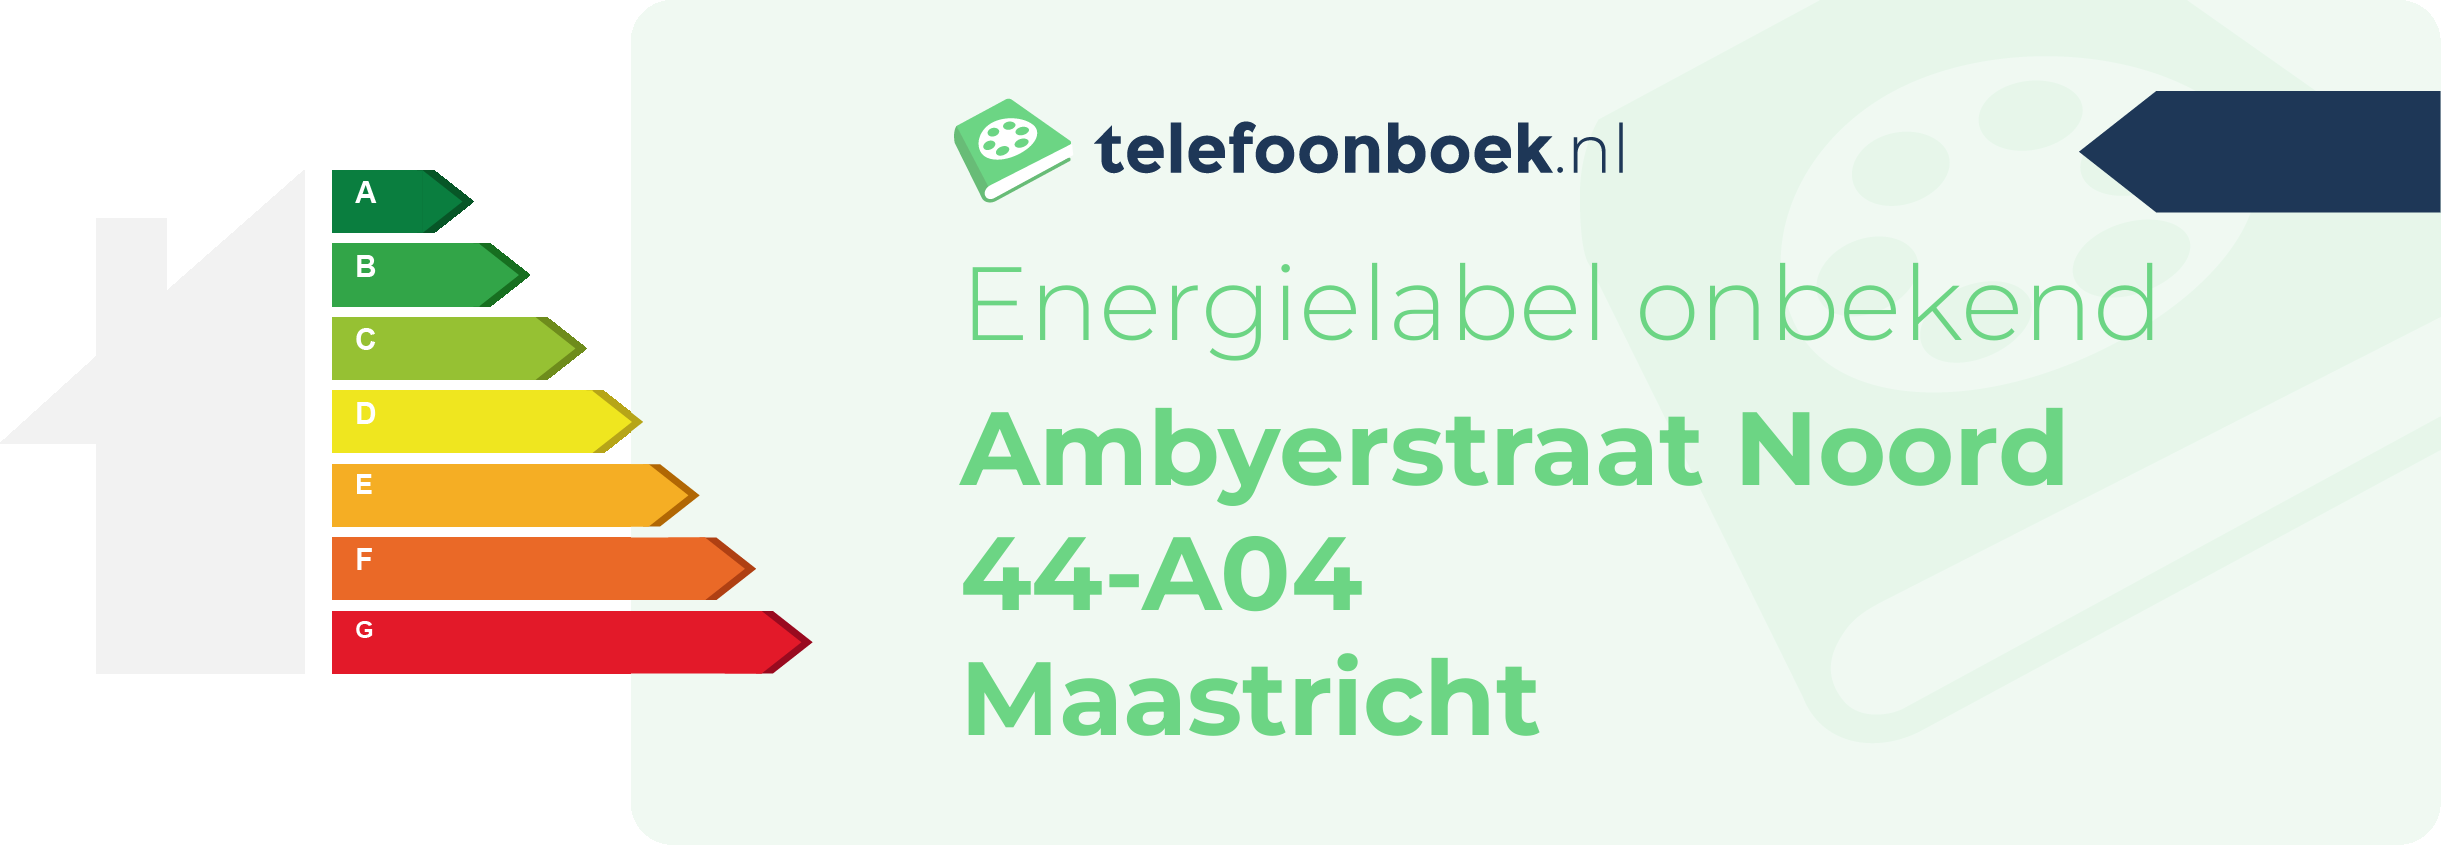 Energielabel Ambyerstraat Noord 44-A04 Maastricht